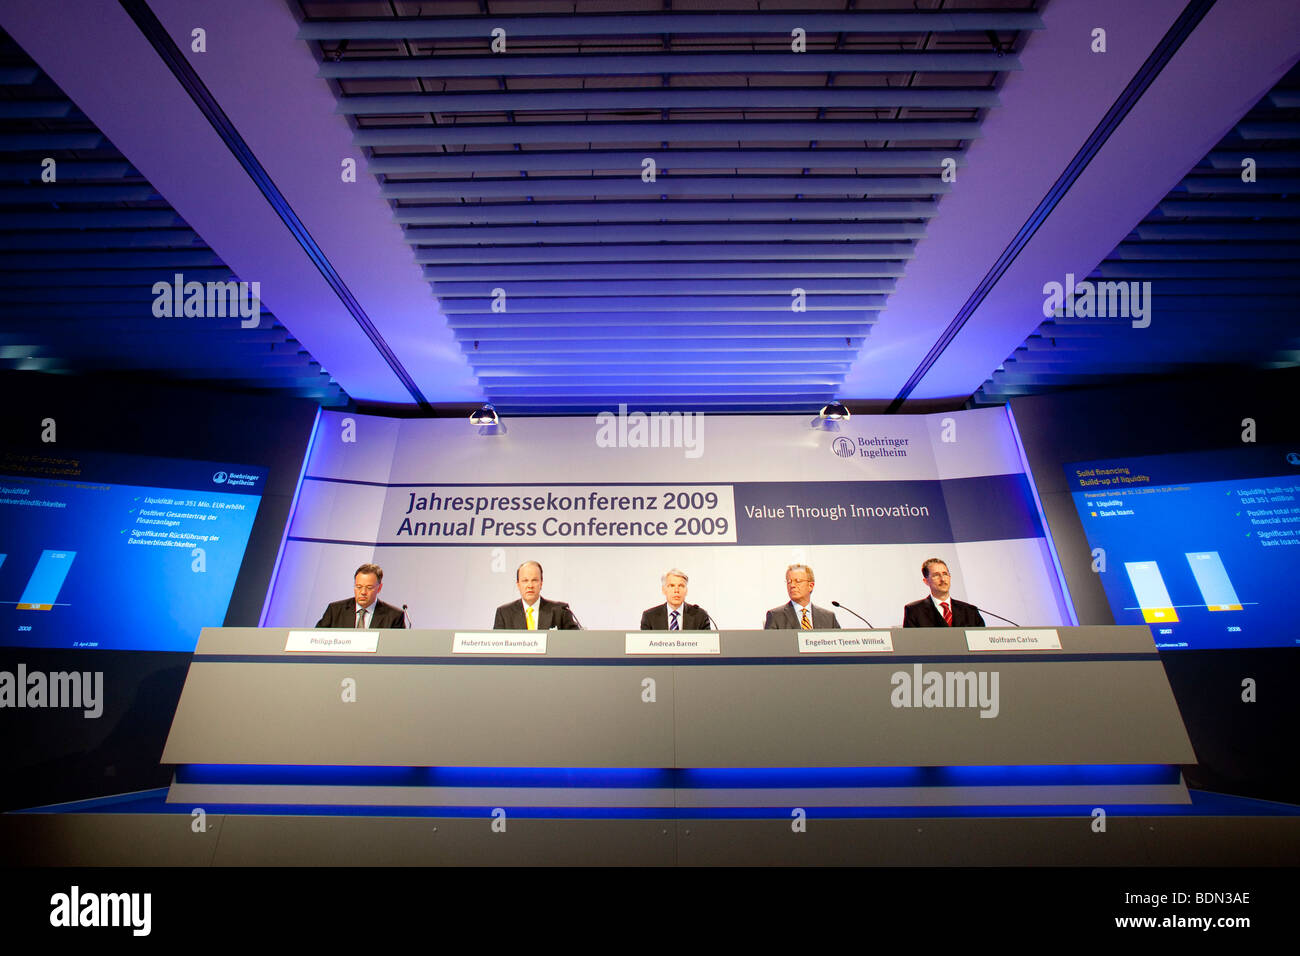 Philip Baum, portavoce della società, sinistra, Hubertus von Baumbach, la seconda da sinistra, CFO, Andreas Barner, centro, Presidente, Engelbert Tj Foto Stock